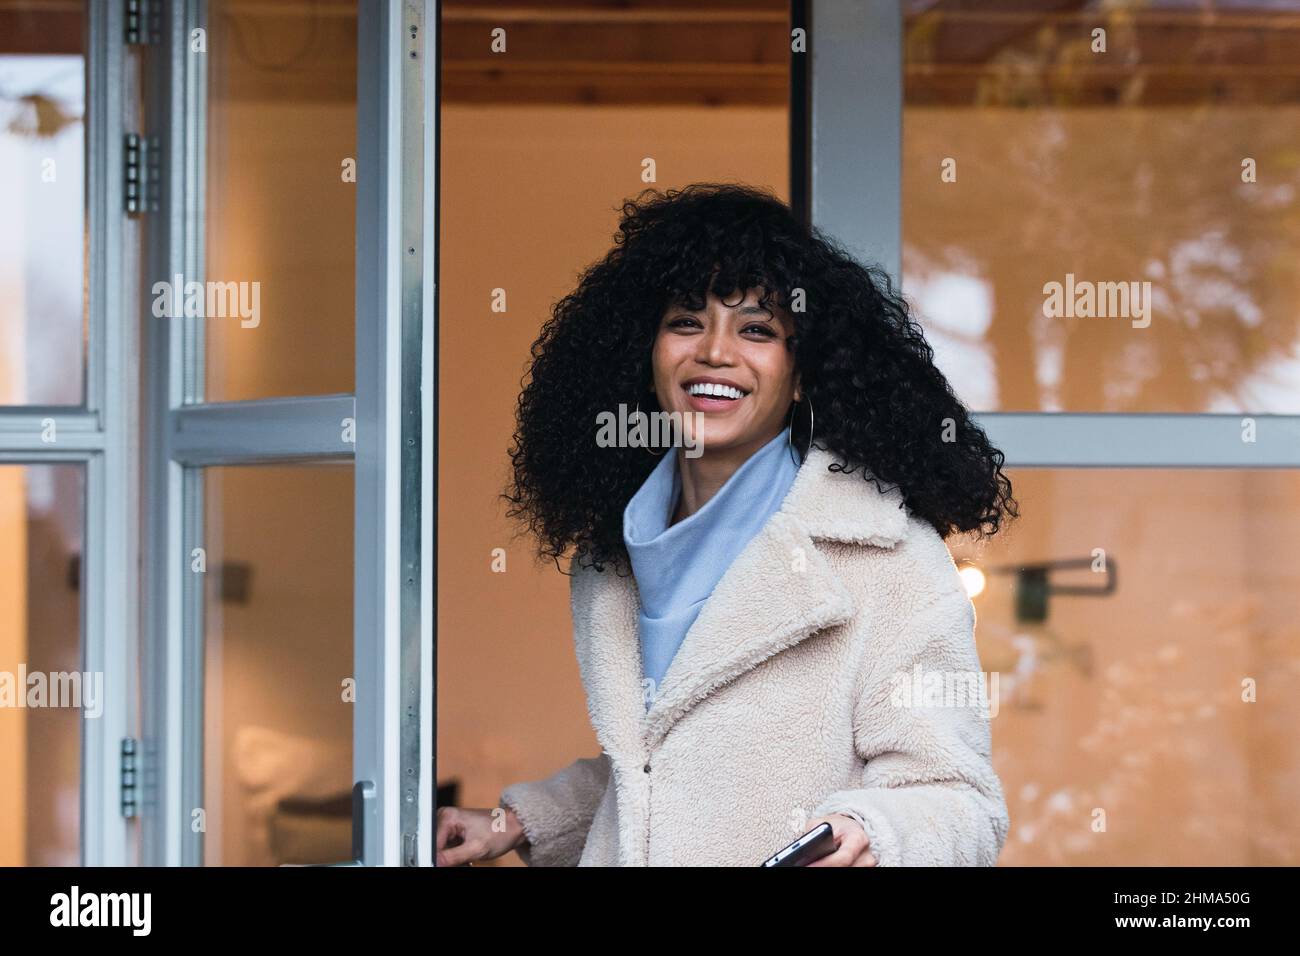 Giovane donna Africana americana allegra con capelli ricci scuri in un cappotto caldo che esce dalla casa attraverso la porta di vetro e guardando la macchina fotografica Foto Stock